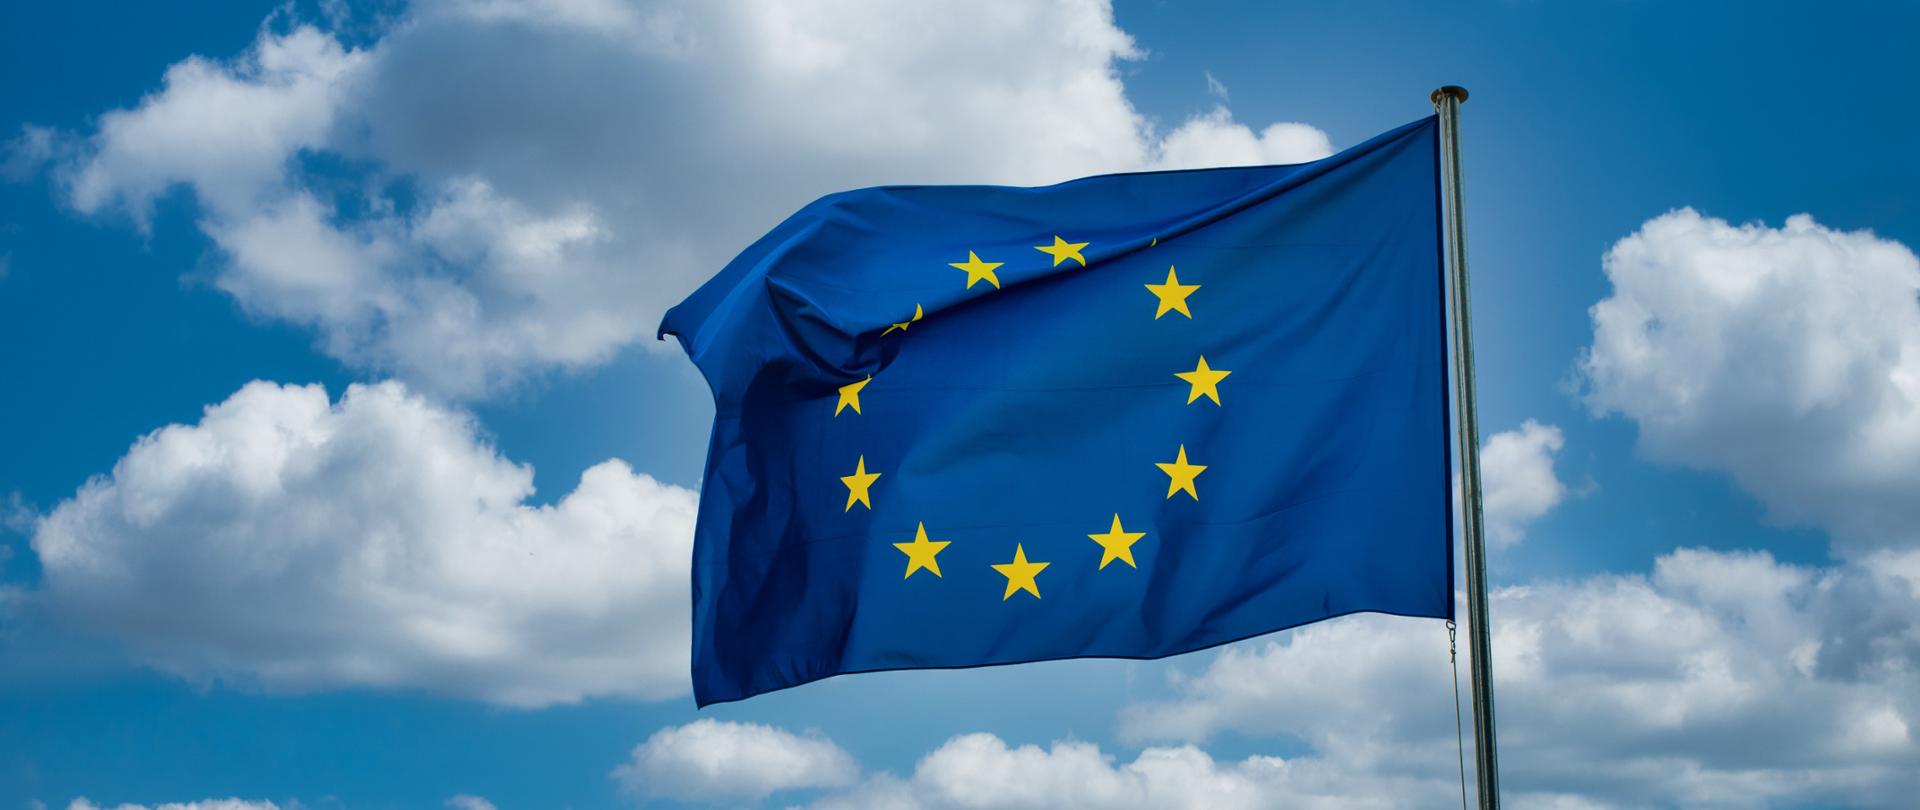 Zdjęcie przedstawia niebieską z żółtymi gwiazdkami flagę Unii Europejskiej zawieszoną na maszcie na tle zachmurzonego nieba.